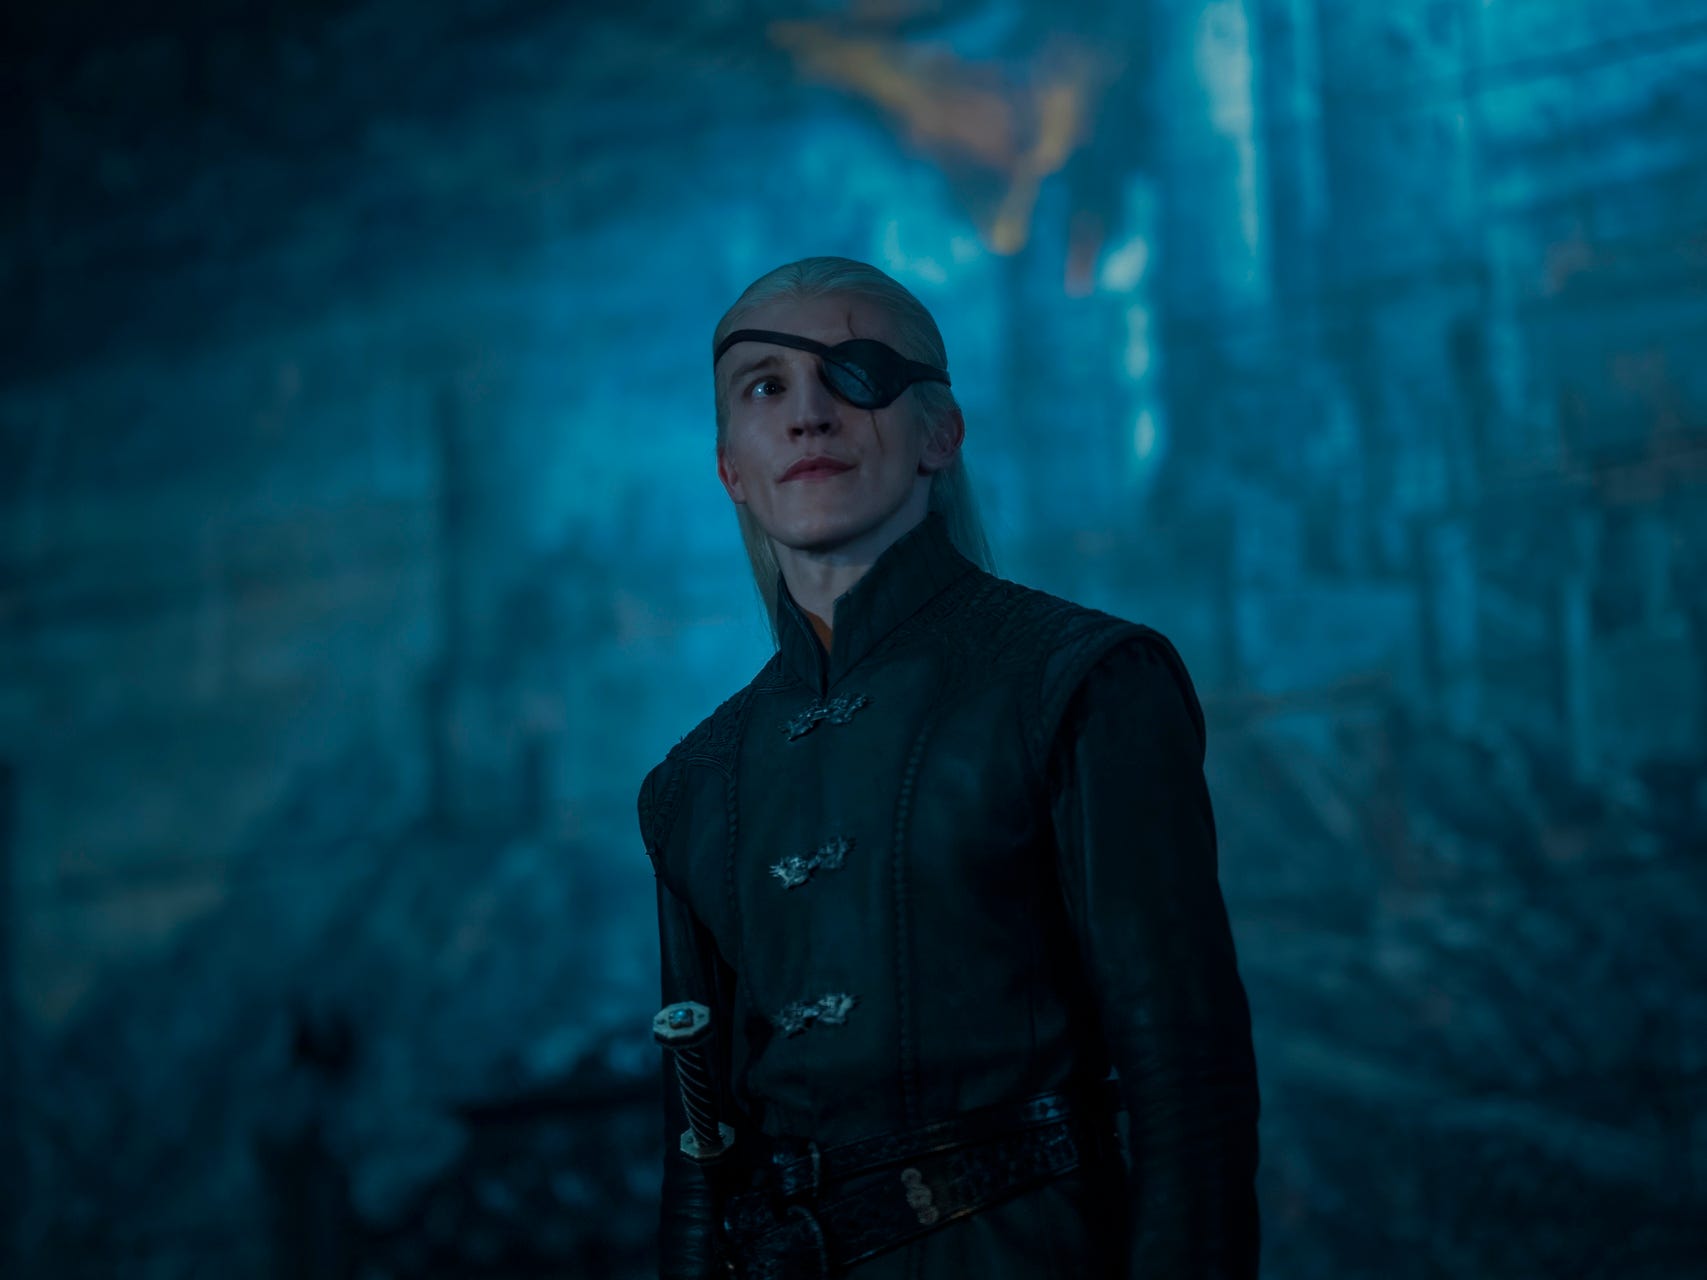 Ewan Mitchell als Aemond Targaryen, trägt schwarze Kleidung, ein Schwert an der Hüfte und eine Augenklappe über dem linken Auge. Er hat langes blondes Haar, das halb nach hinten gebunden ist.